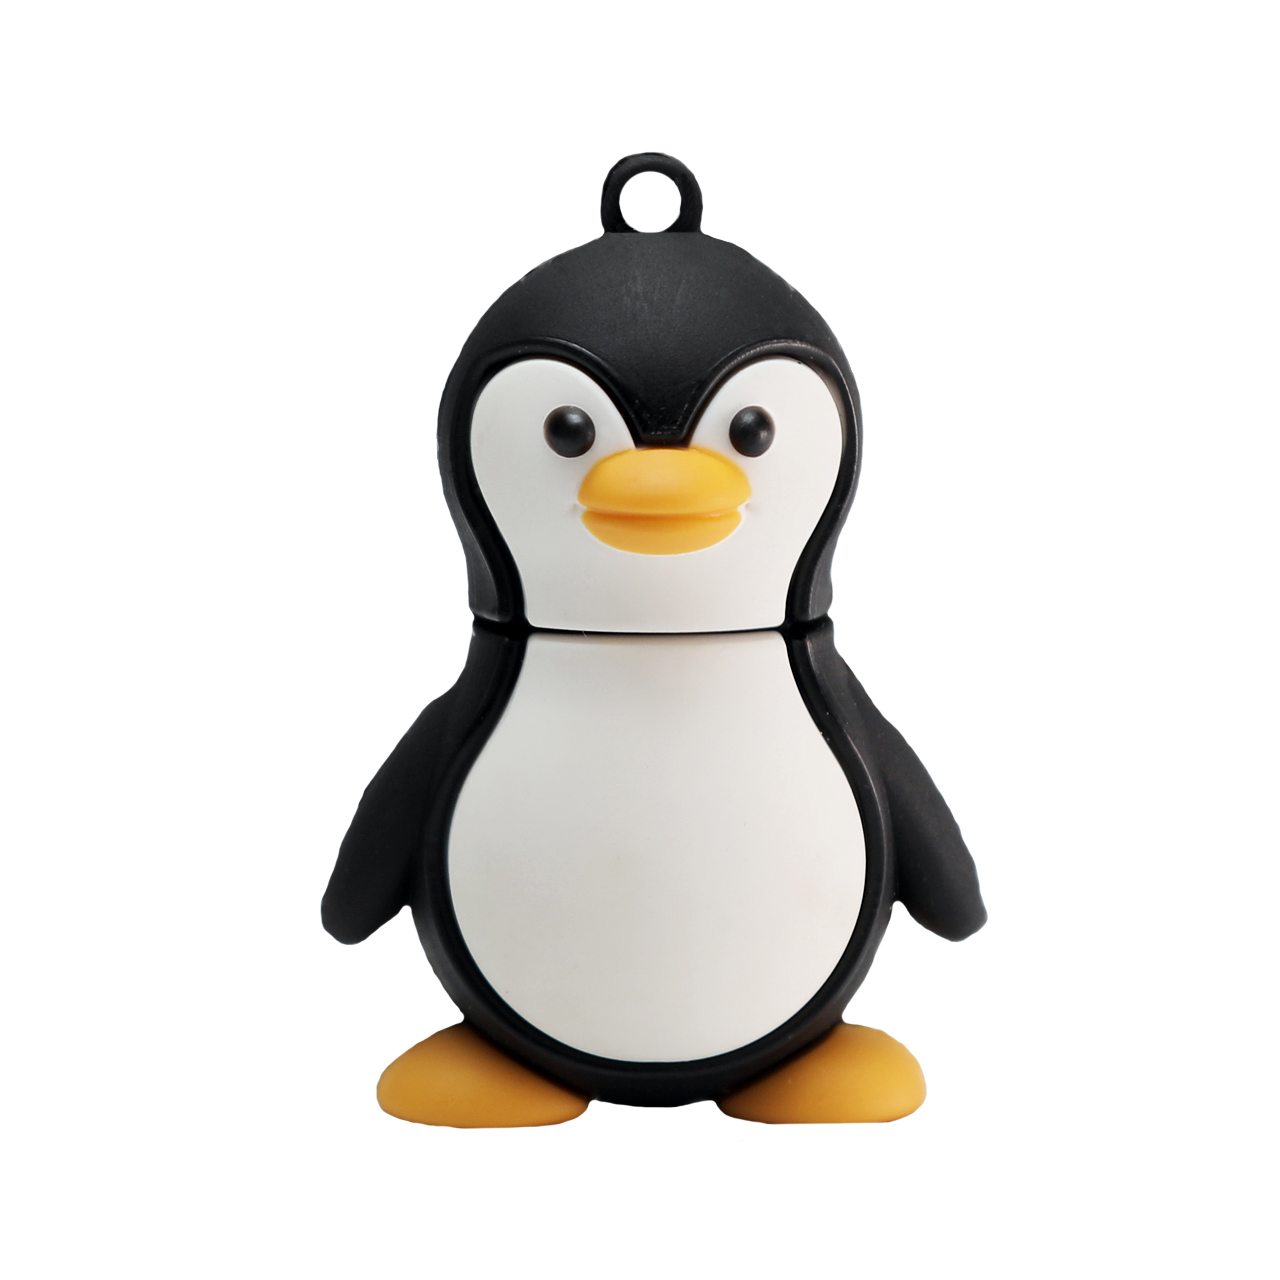 فلش مموری دایا دیتا طرح پنگوئن مدل PF1102-USB3 ظرفیت 32 گیگابایت